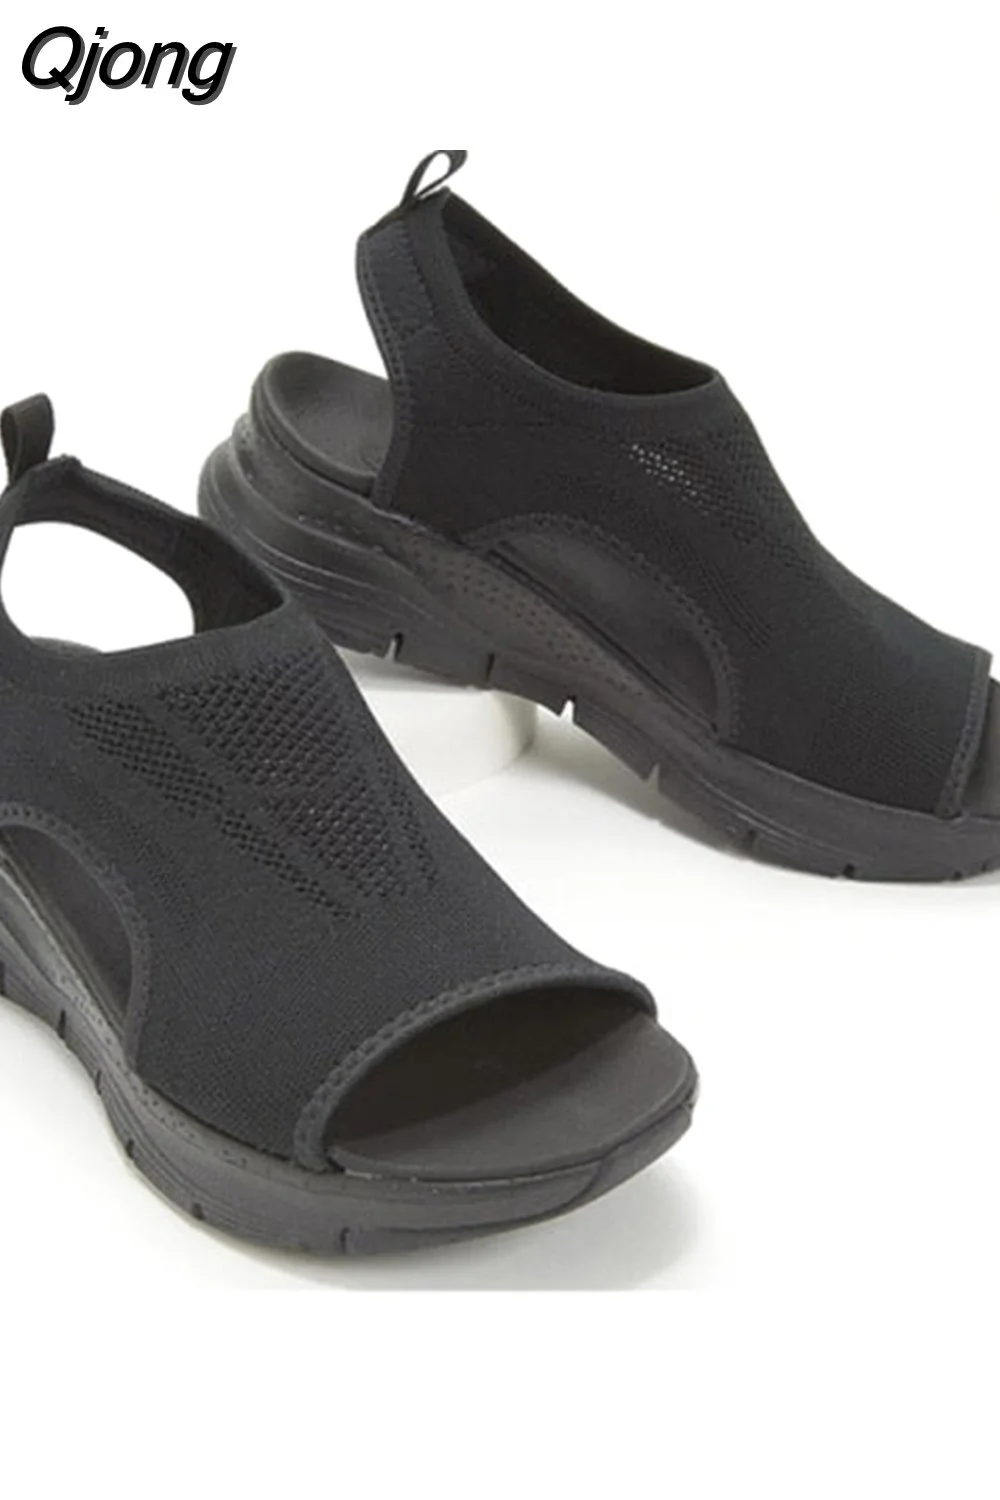 Qjong Size Women's Shoes Summer 2023 Comfort Casual Sport Sandals Women Beach Wedge Sandals Women Platform Sandals Roman Sandals 1020-1